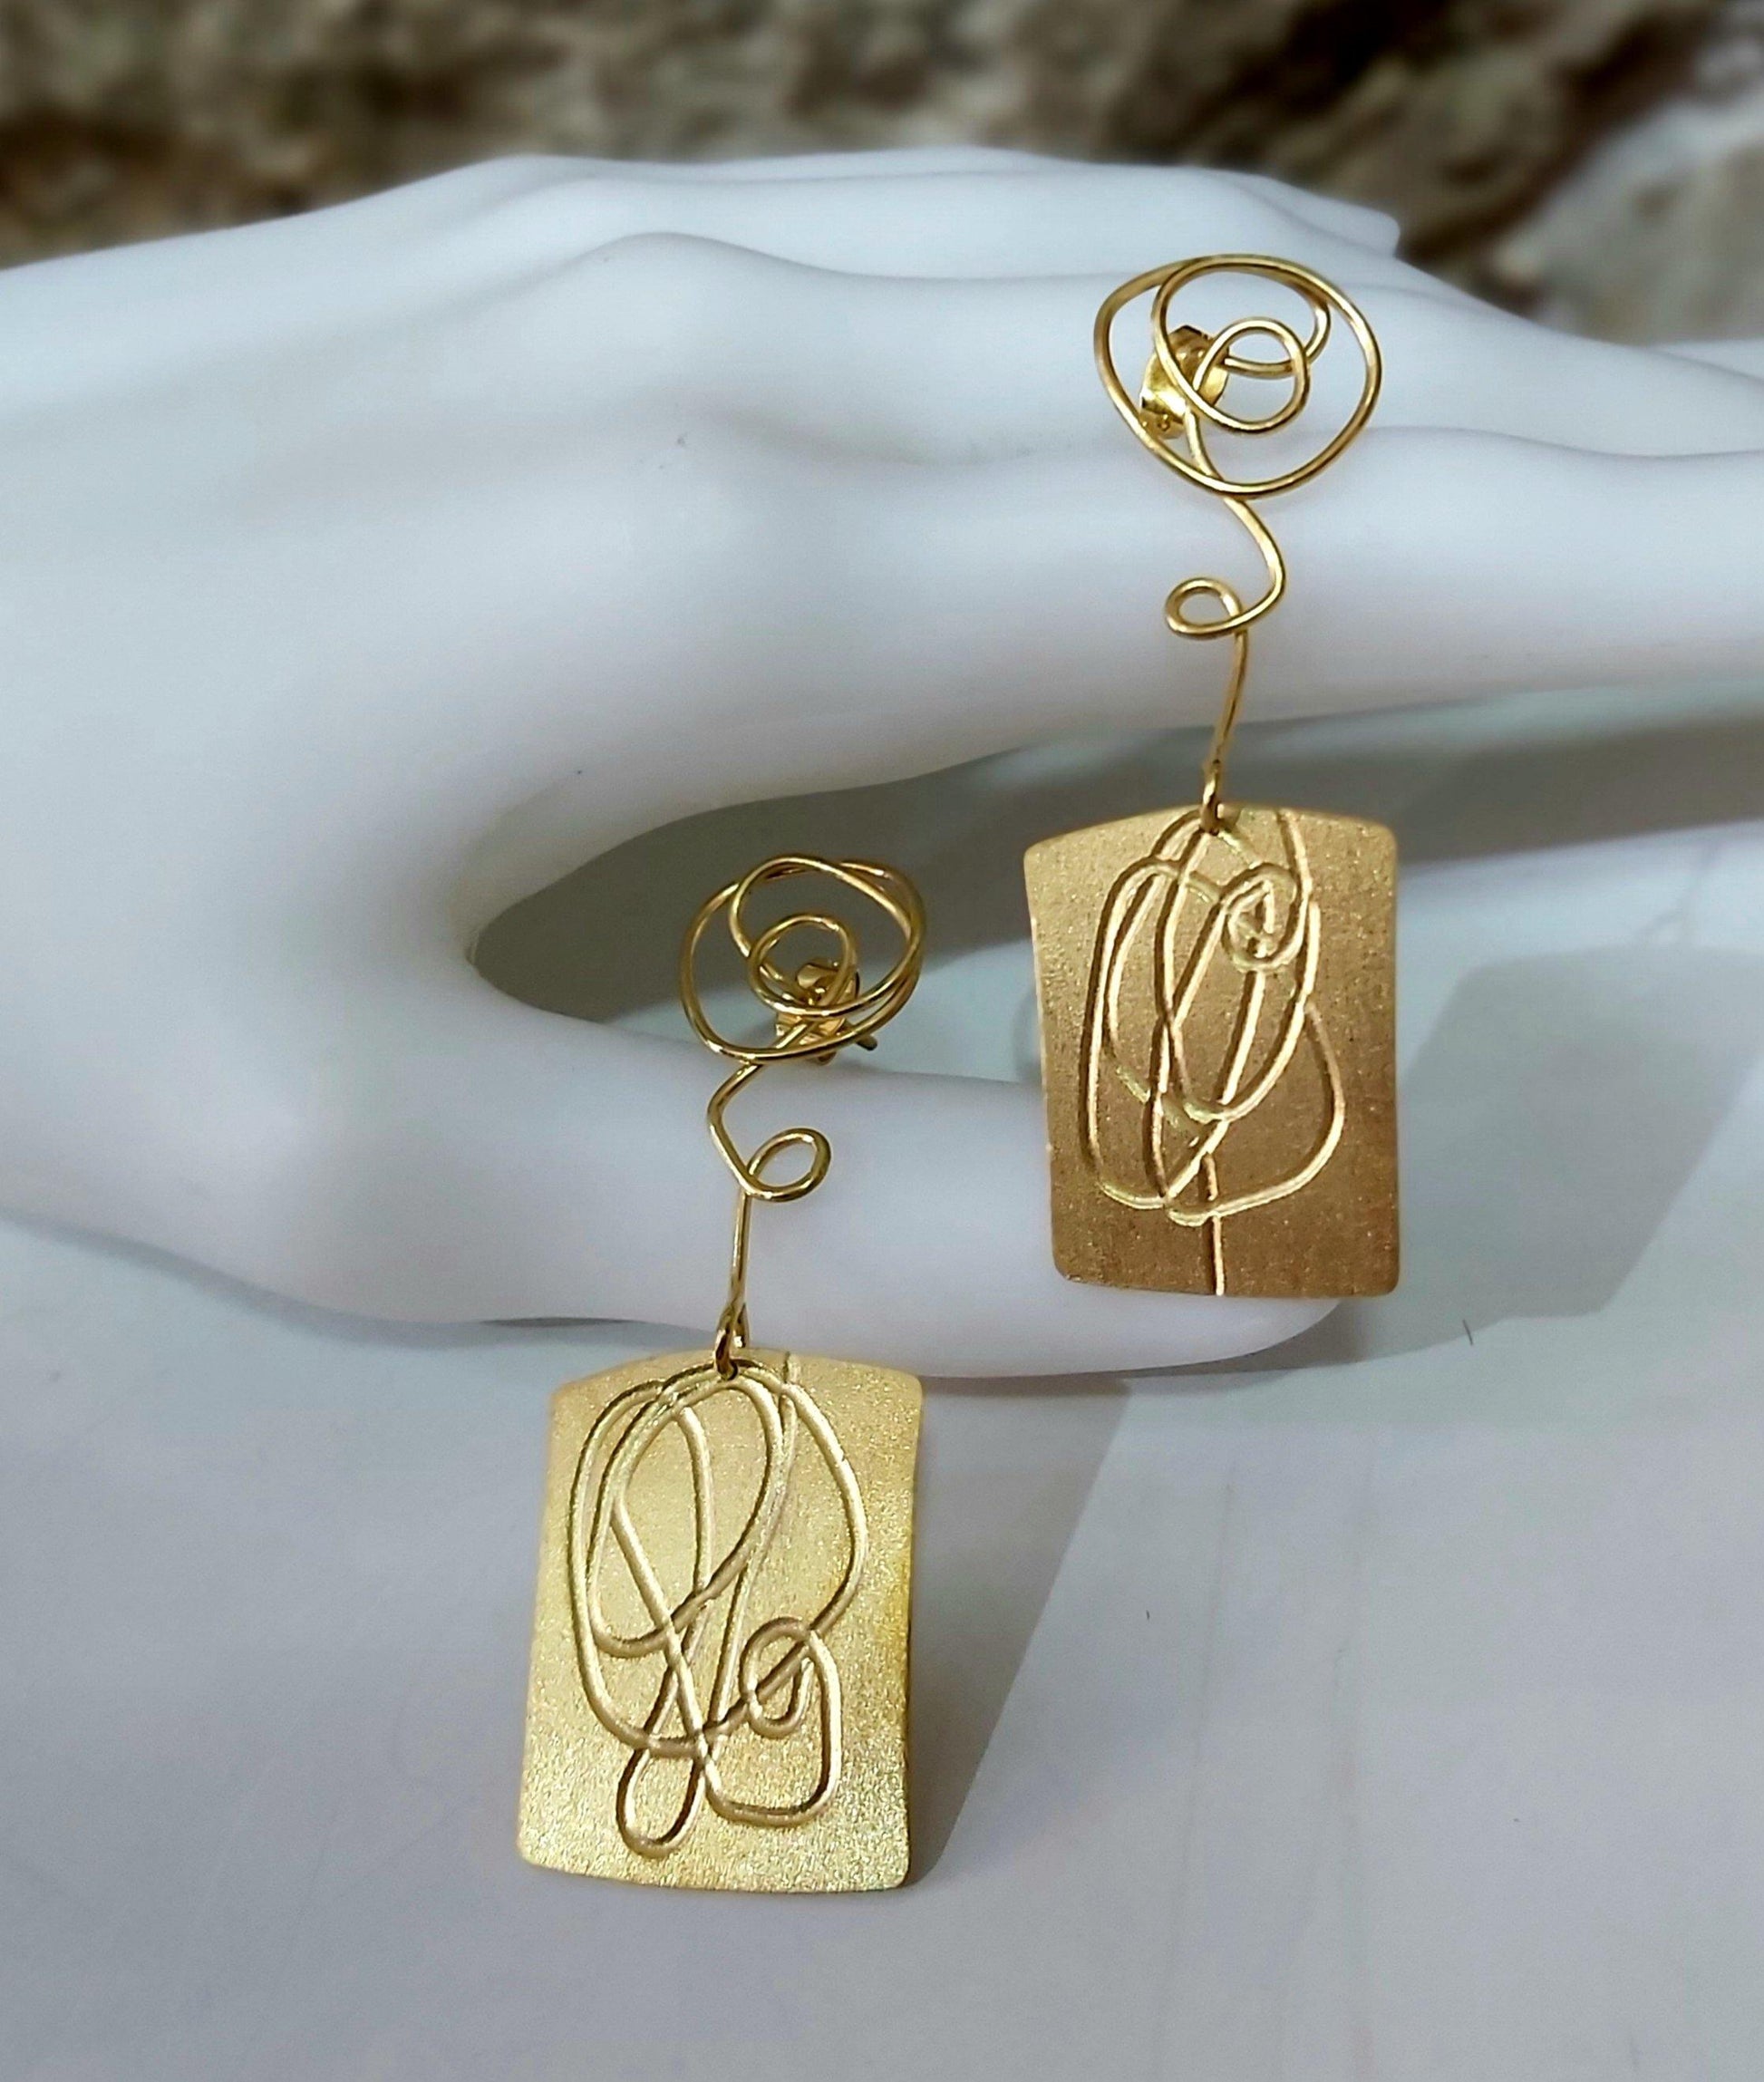 Pendientes mujer originales chapados en oro elaborados artesanalmente. Hechos a mano por Amparo Valencia